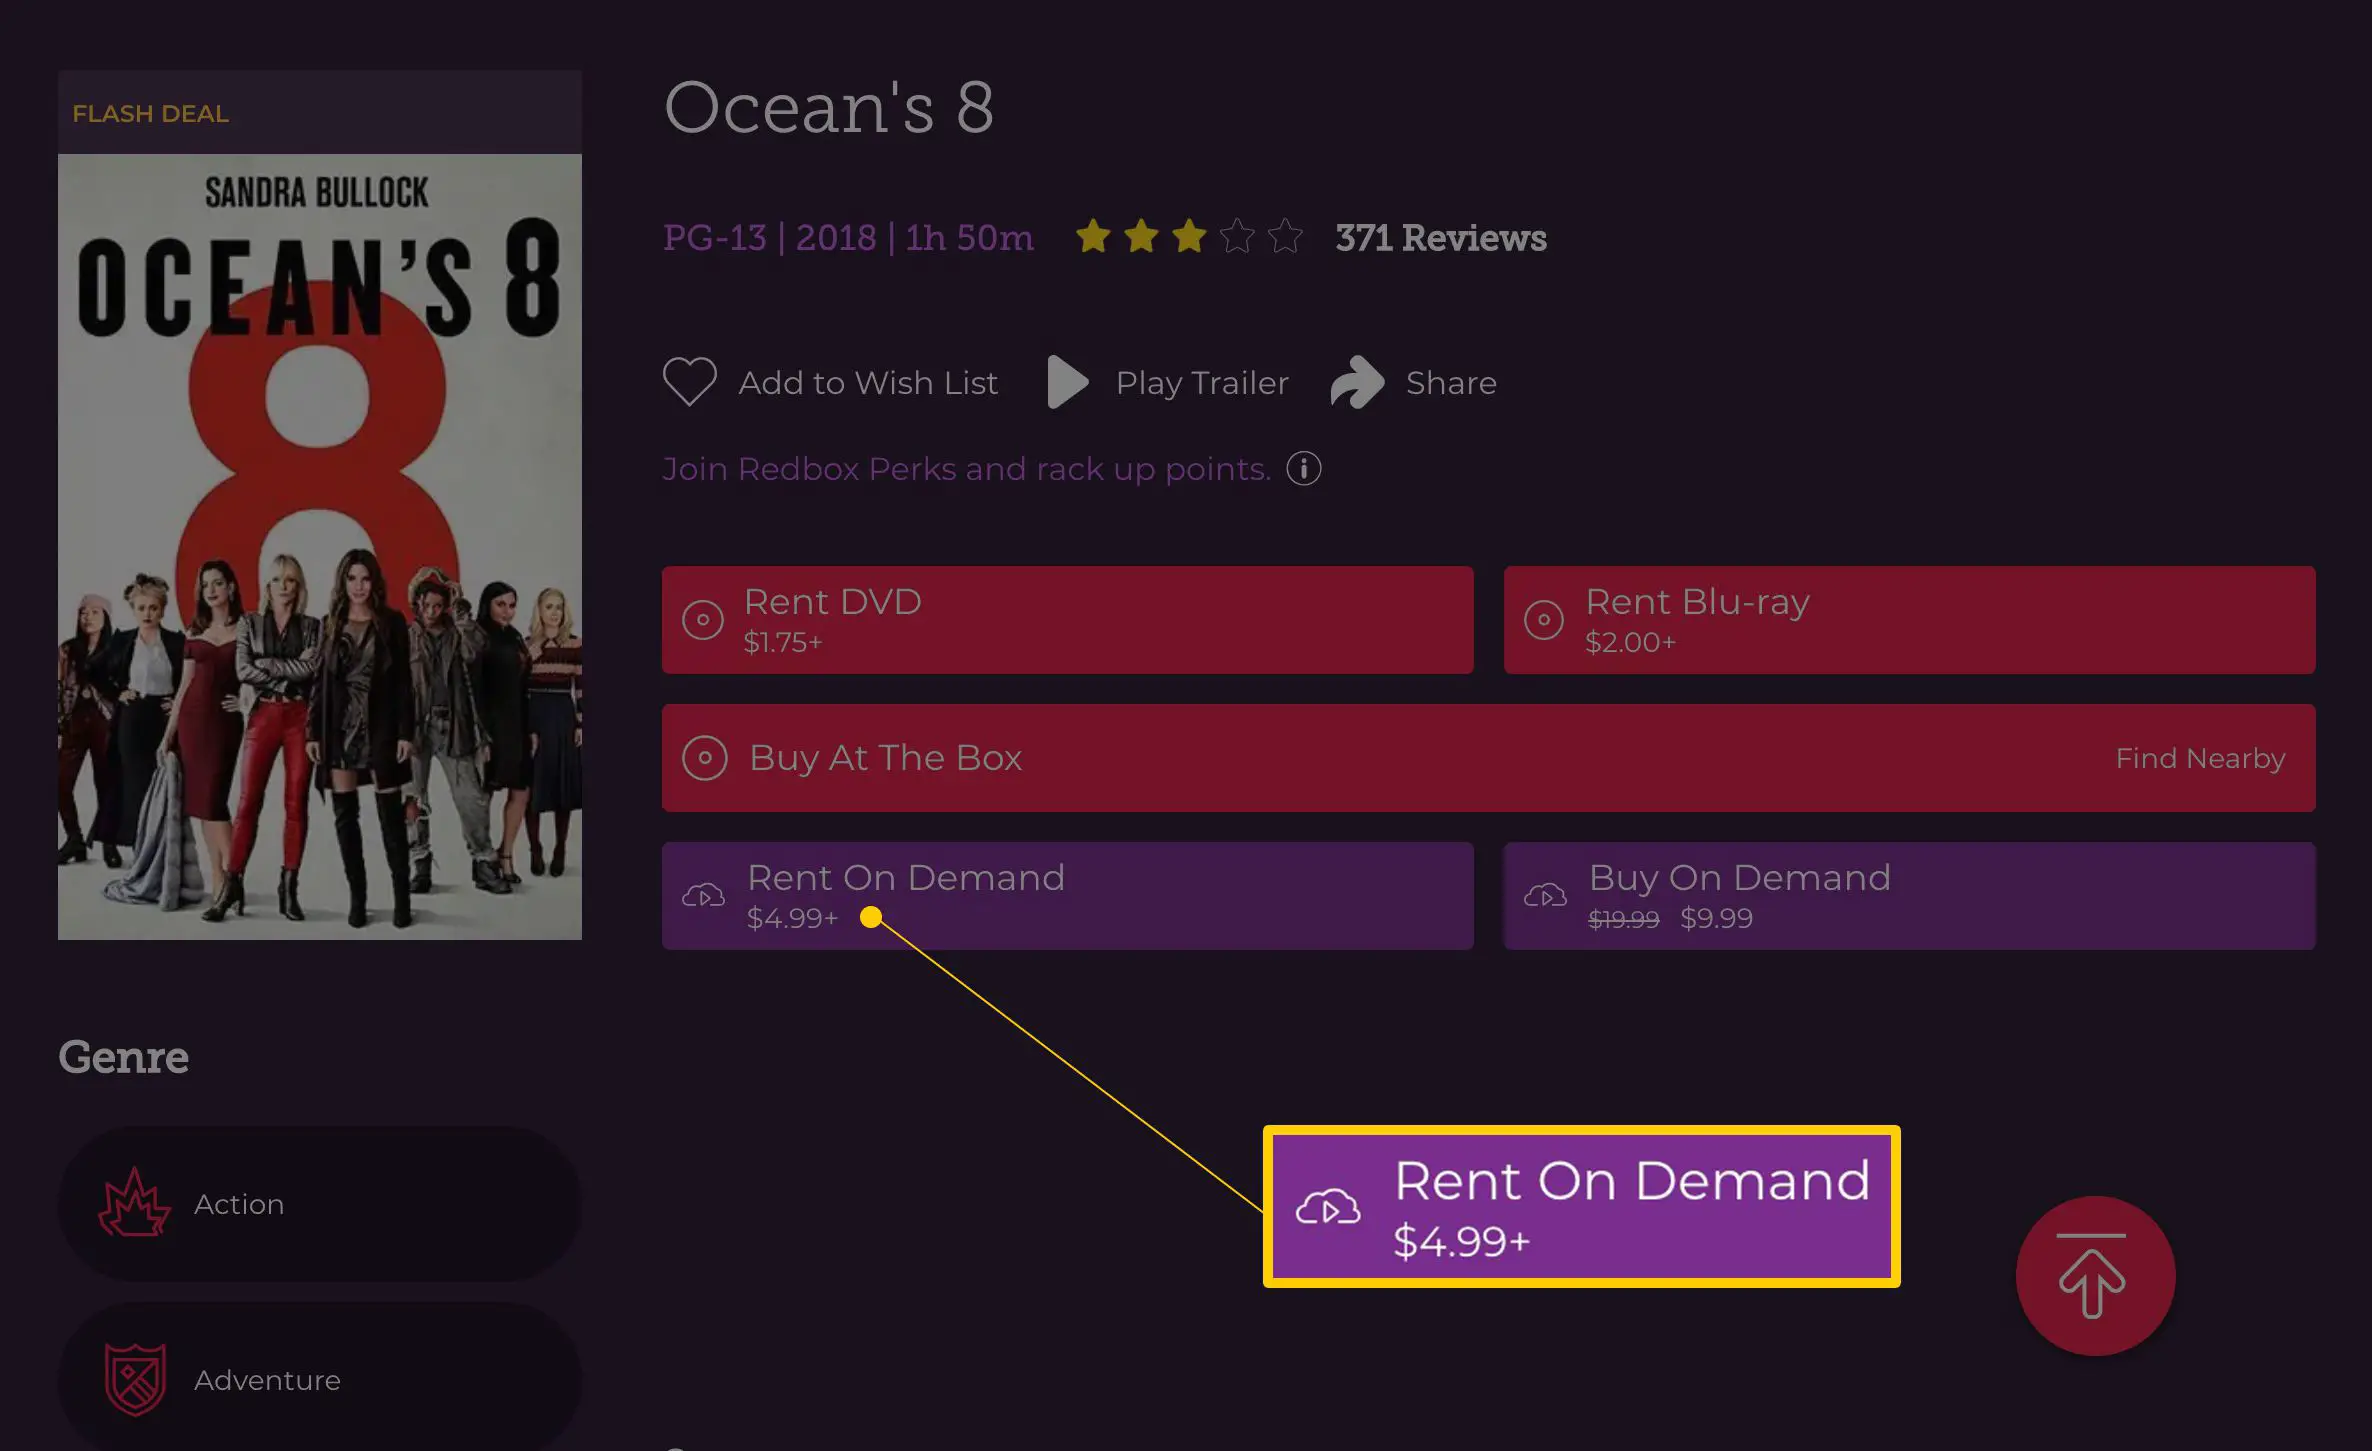 Rent On Demand $ 4,99 + botão na página de detalhes do Ocean's 8 no Redbox